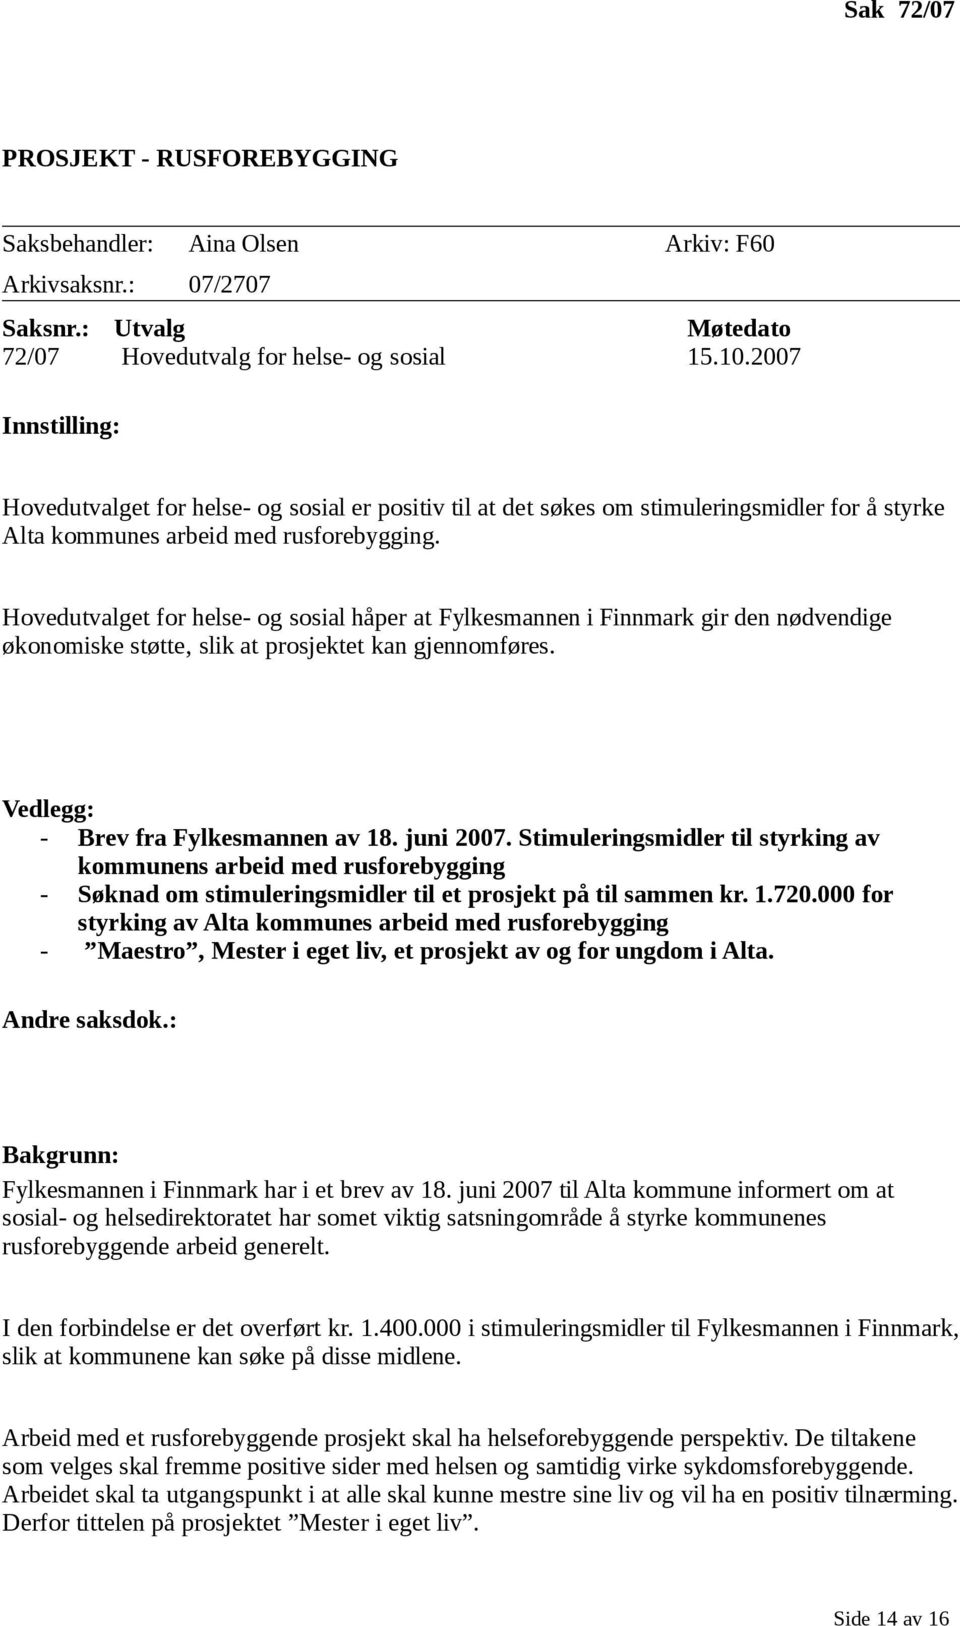 Hovedutvalget for helse- og sosial håper at Fylkesmannen i Finnmark gir den nødvendige økonomiske støtte, slik at prosjektet kan gjennomføres. Vedlegg: - Brev fra Fylkesmannen av 18. juni 2007.